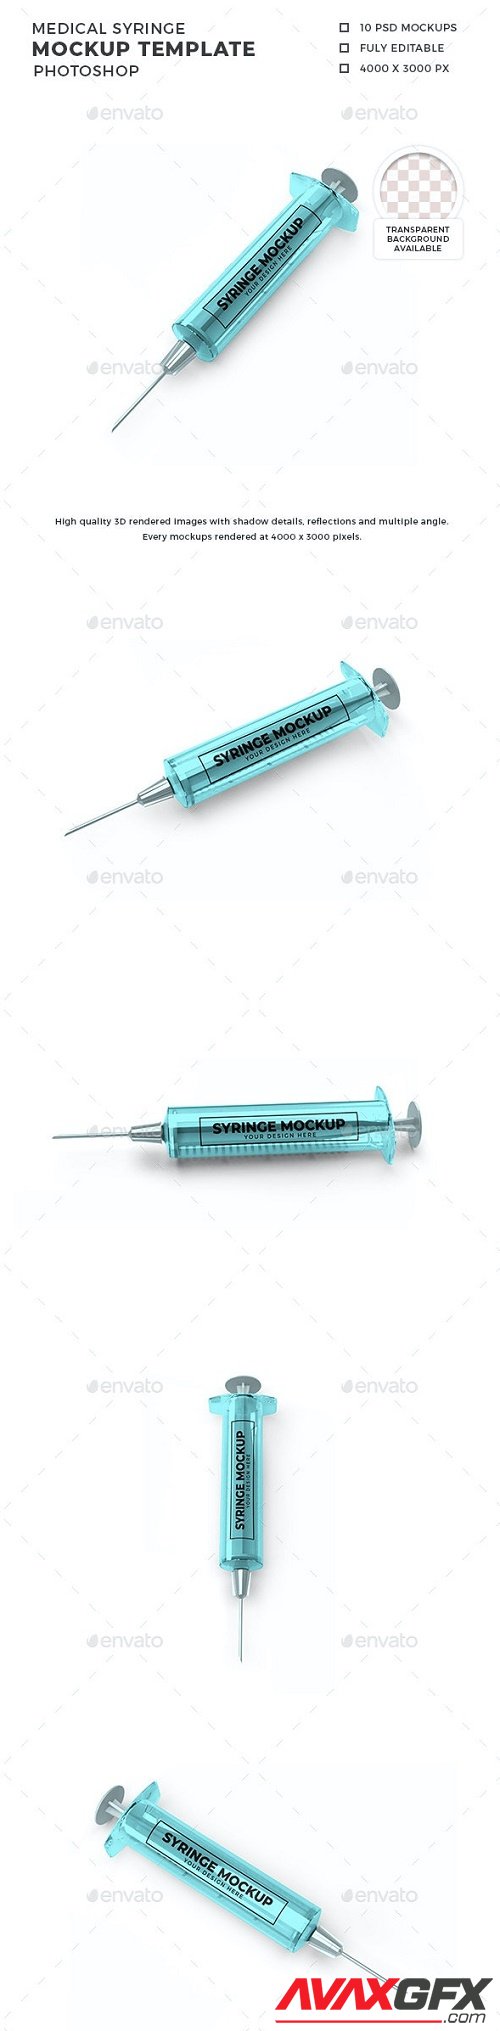 Medical Syringe Mockup Template Set 30362157